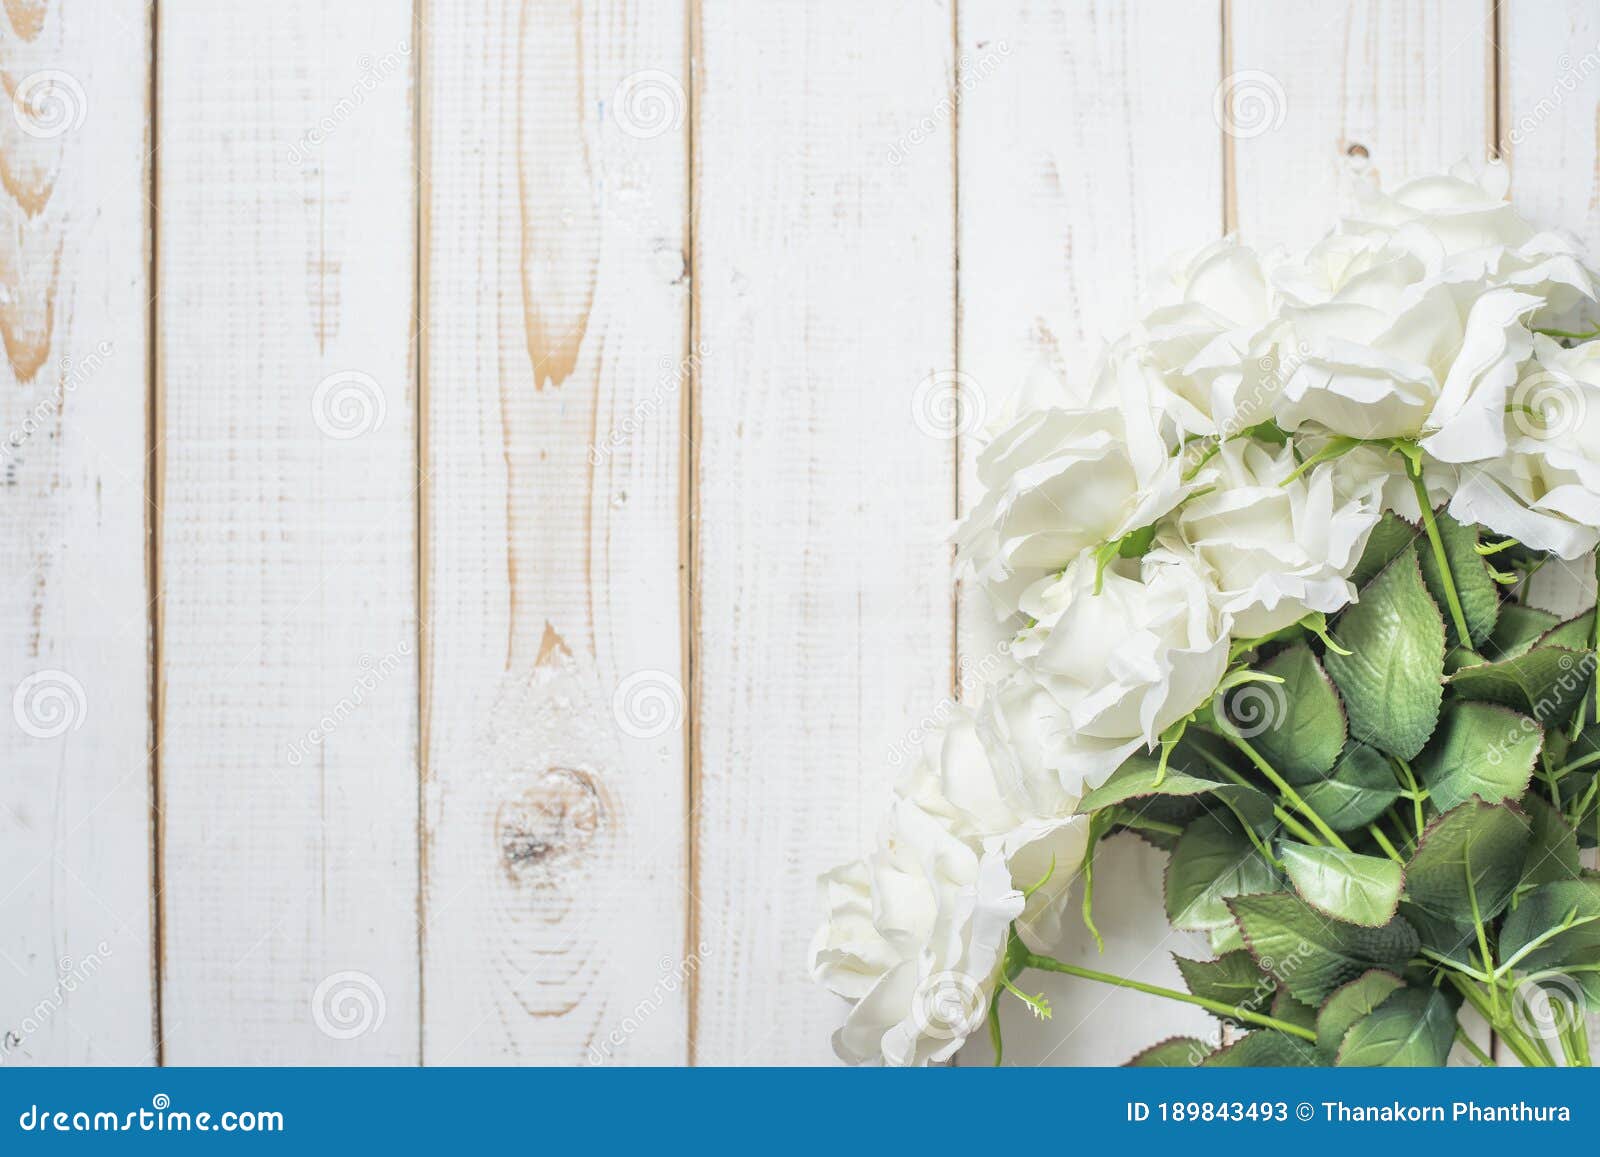 Những bông hoa cưới trên nền gỗ trắng là điều tuyệt vời nhất mà bạn có thể tặng cho một người bạn yêu. Với sắc trắng thuần khiết như tình yêu chân thành, bức ảnh này sẽ giúp bạn đưa ra thông điệp tốt đẹp nhất và giúp người ấy cảm thấy xúc động trước tình cảm của bạn.